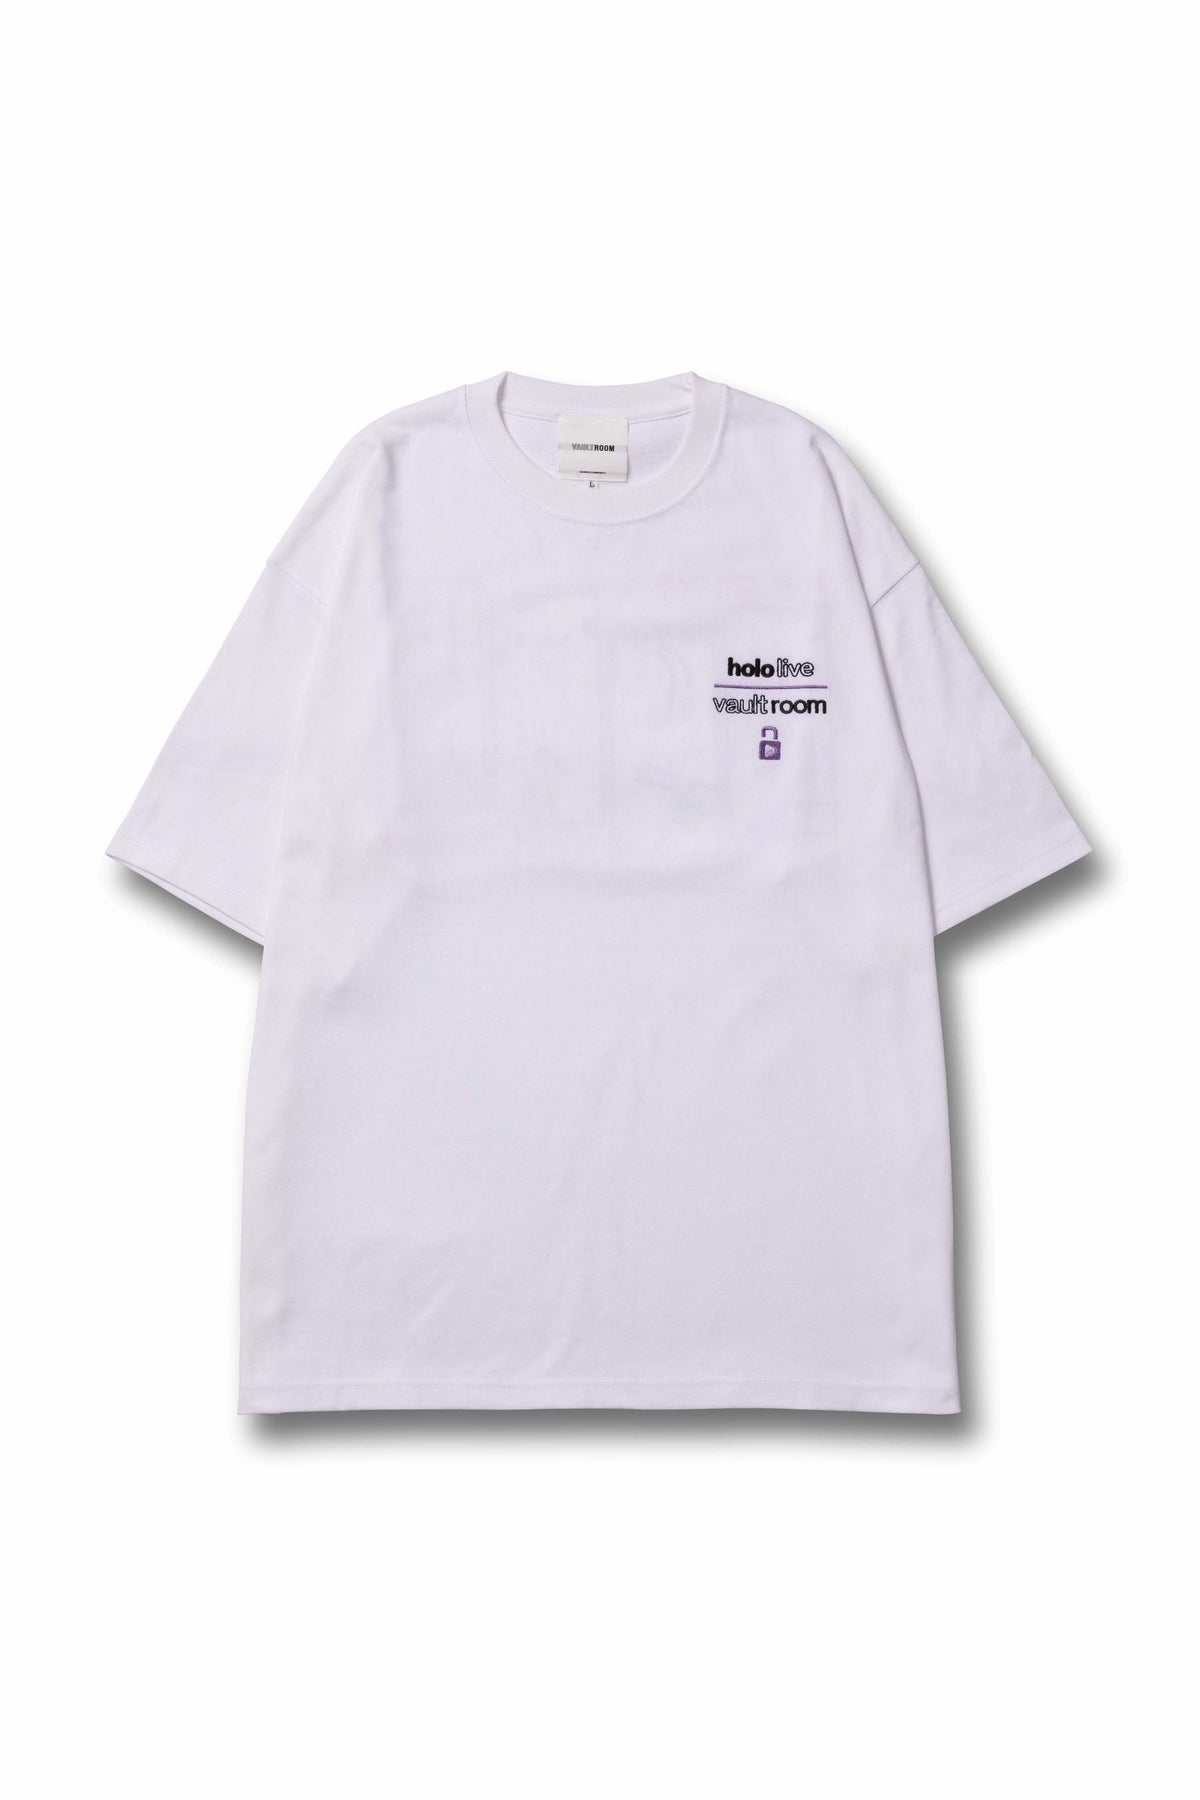 柄デザインプリントvaultroom TOKOYAMI TOWA TEE / WHT - Tシャツ 